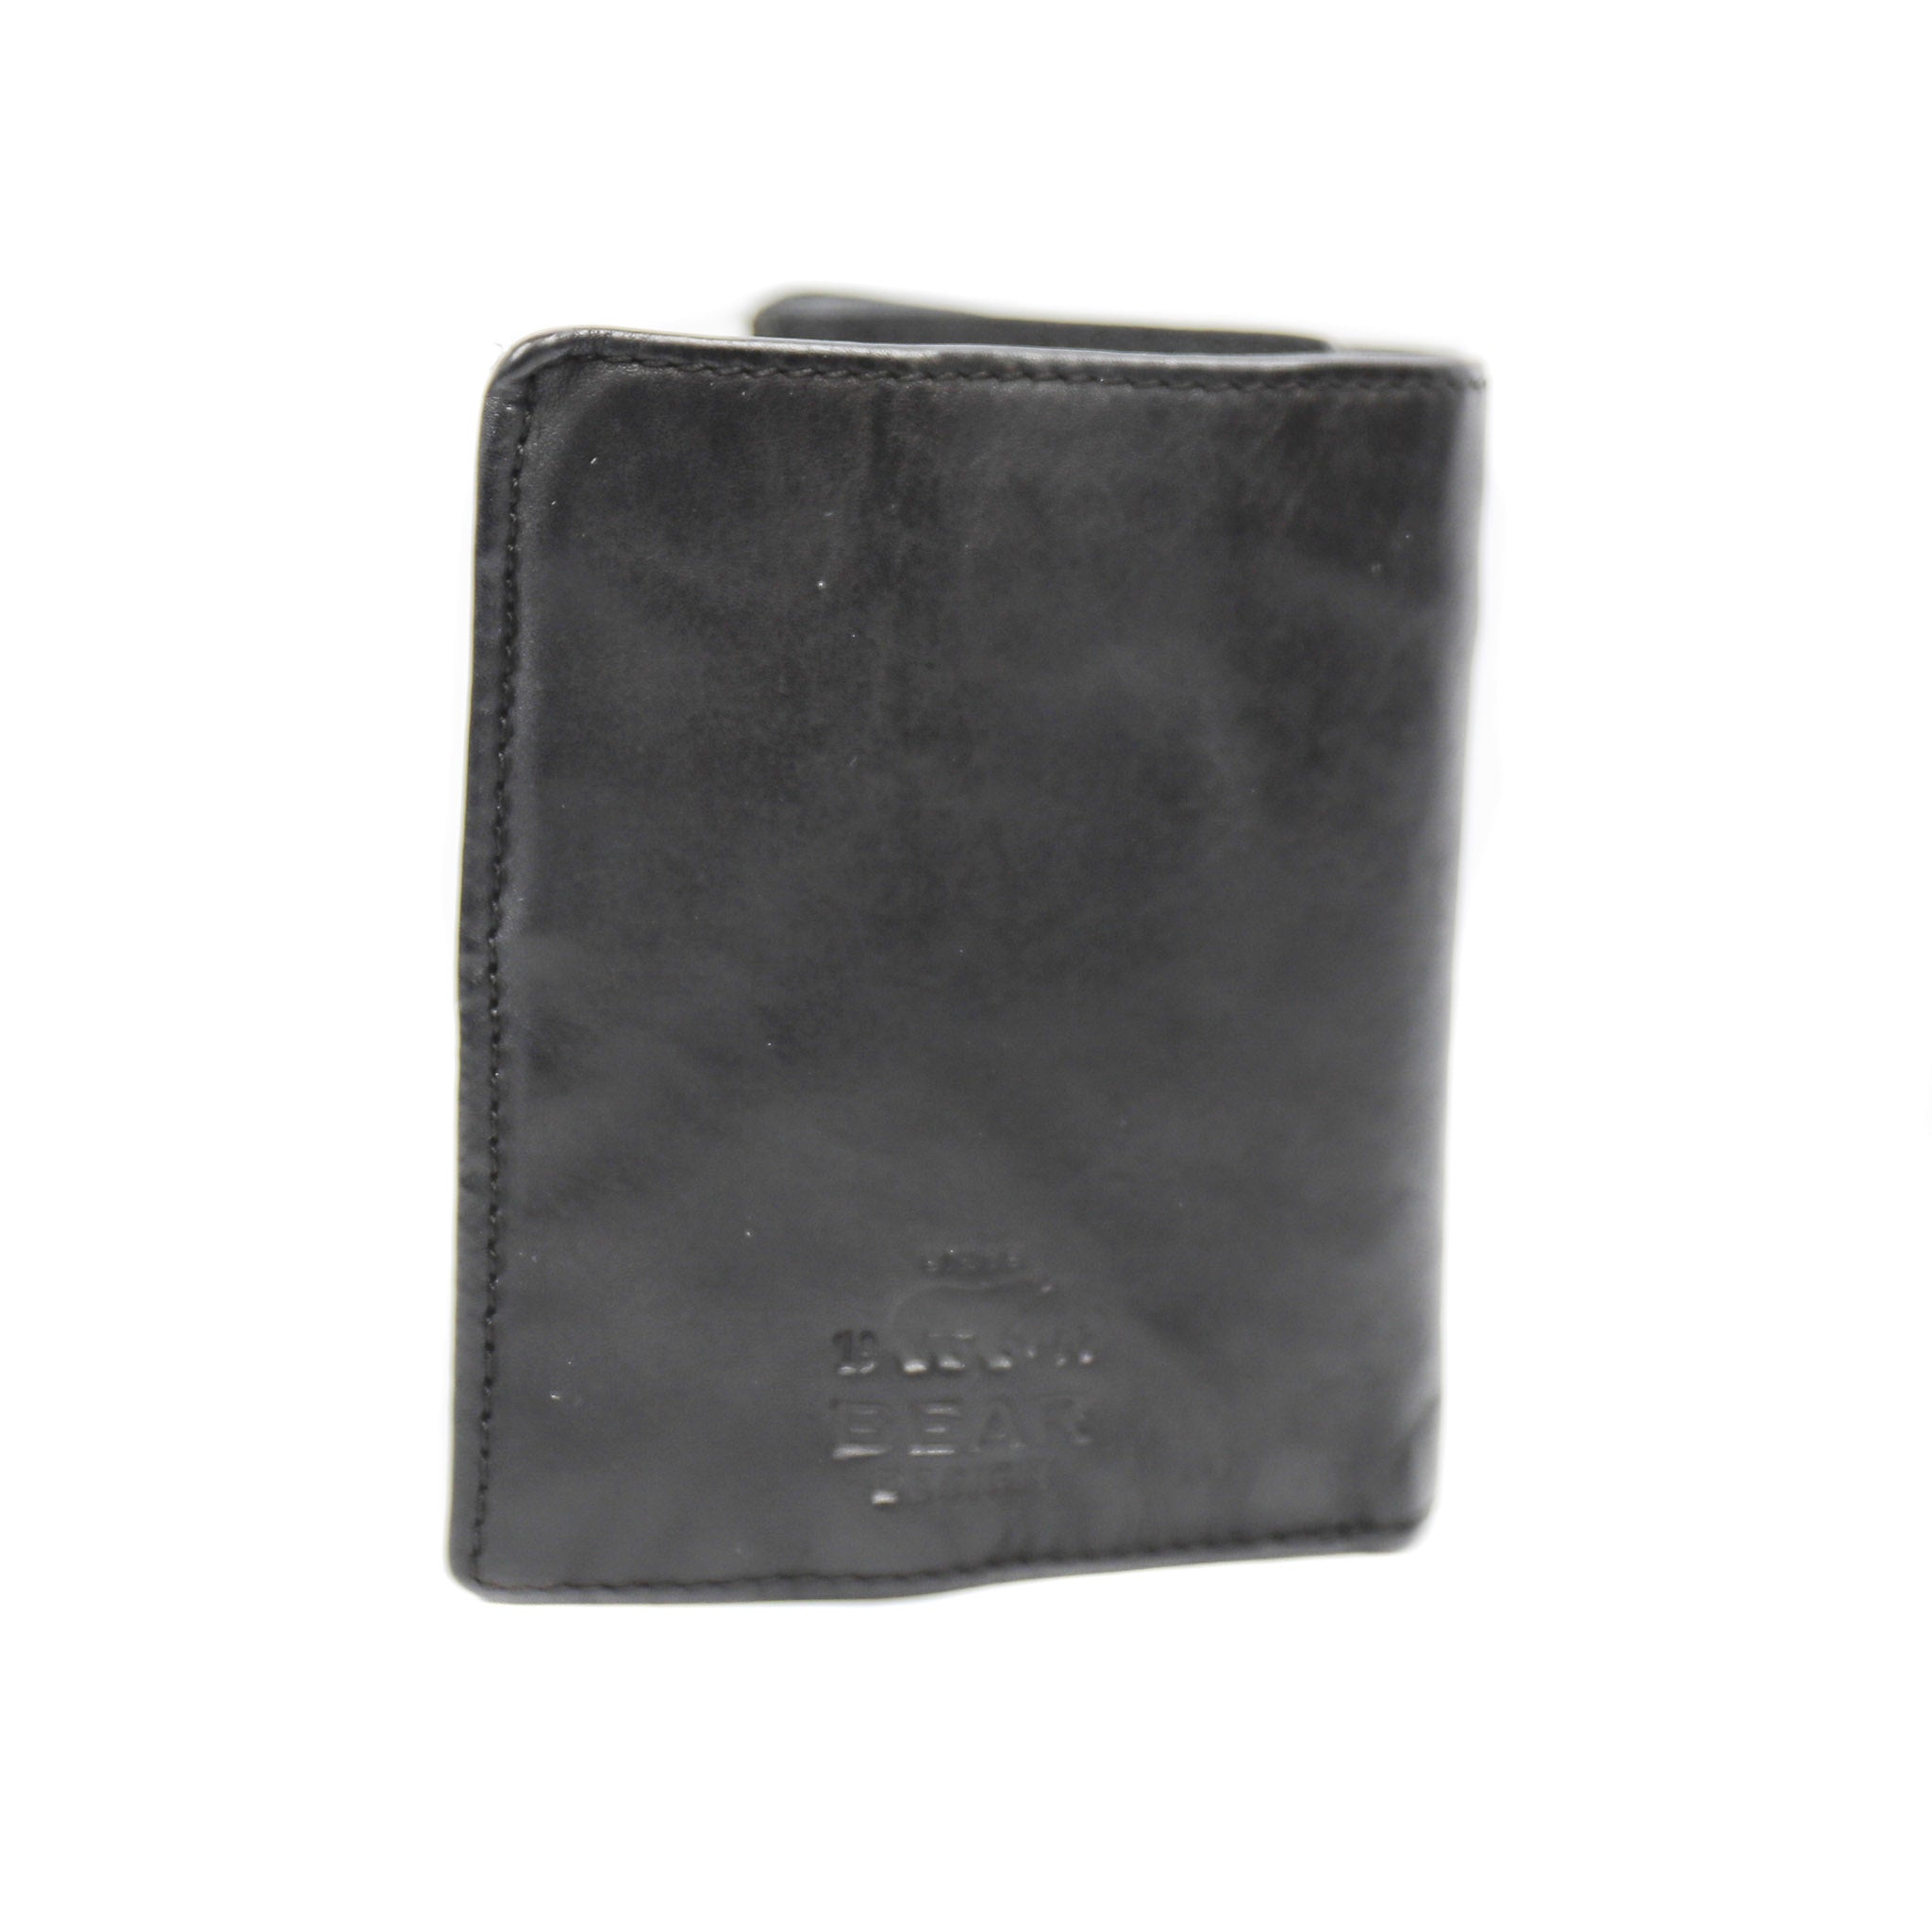 Brieftasche 'Harold' schwarz - CL 14985